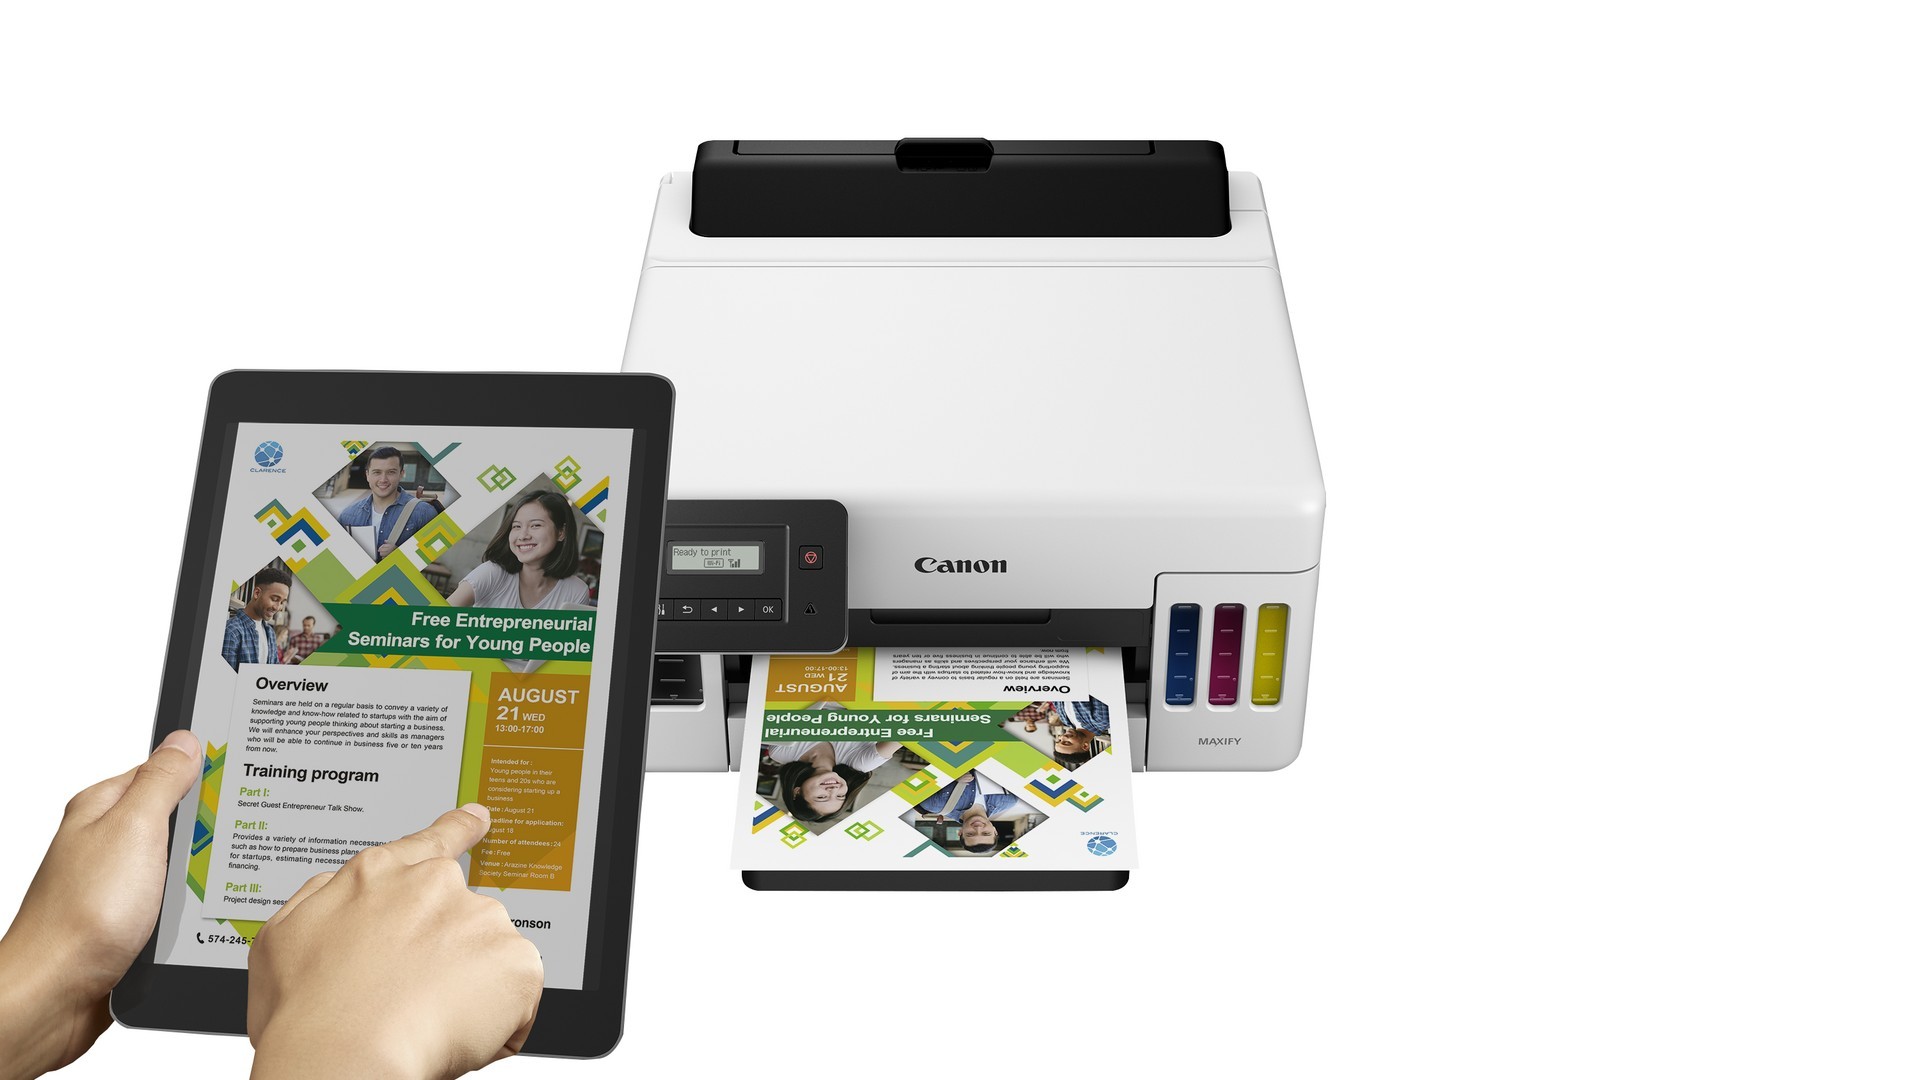 impresoras y scanners - CANON GX5010 MAXIFY, INALÁMBRICA MEGATANK, ALTA PRODUCTIVIDAD DE IMPRESIÓN 2